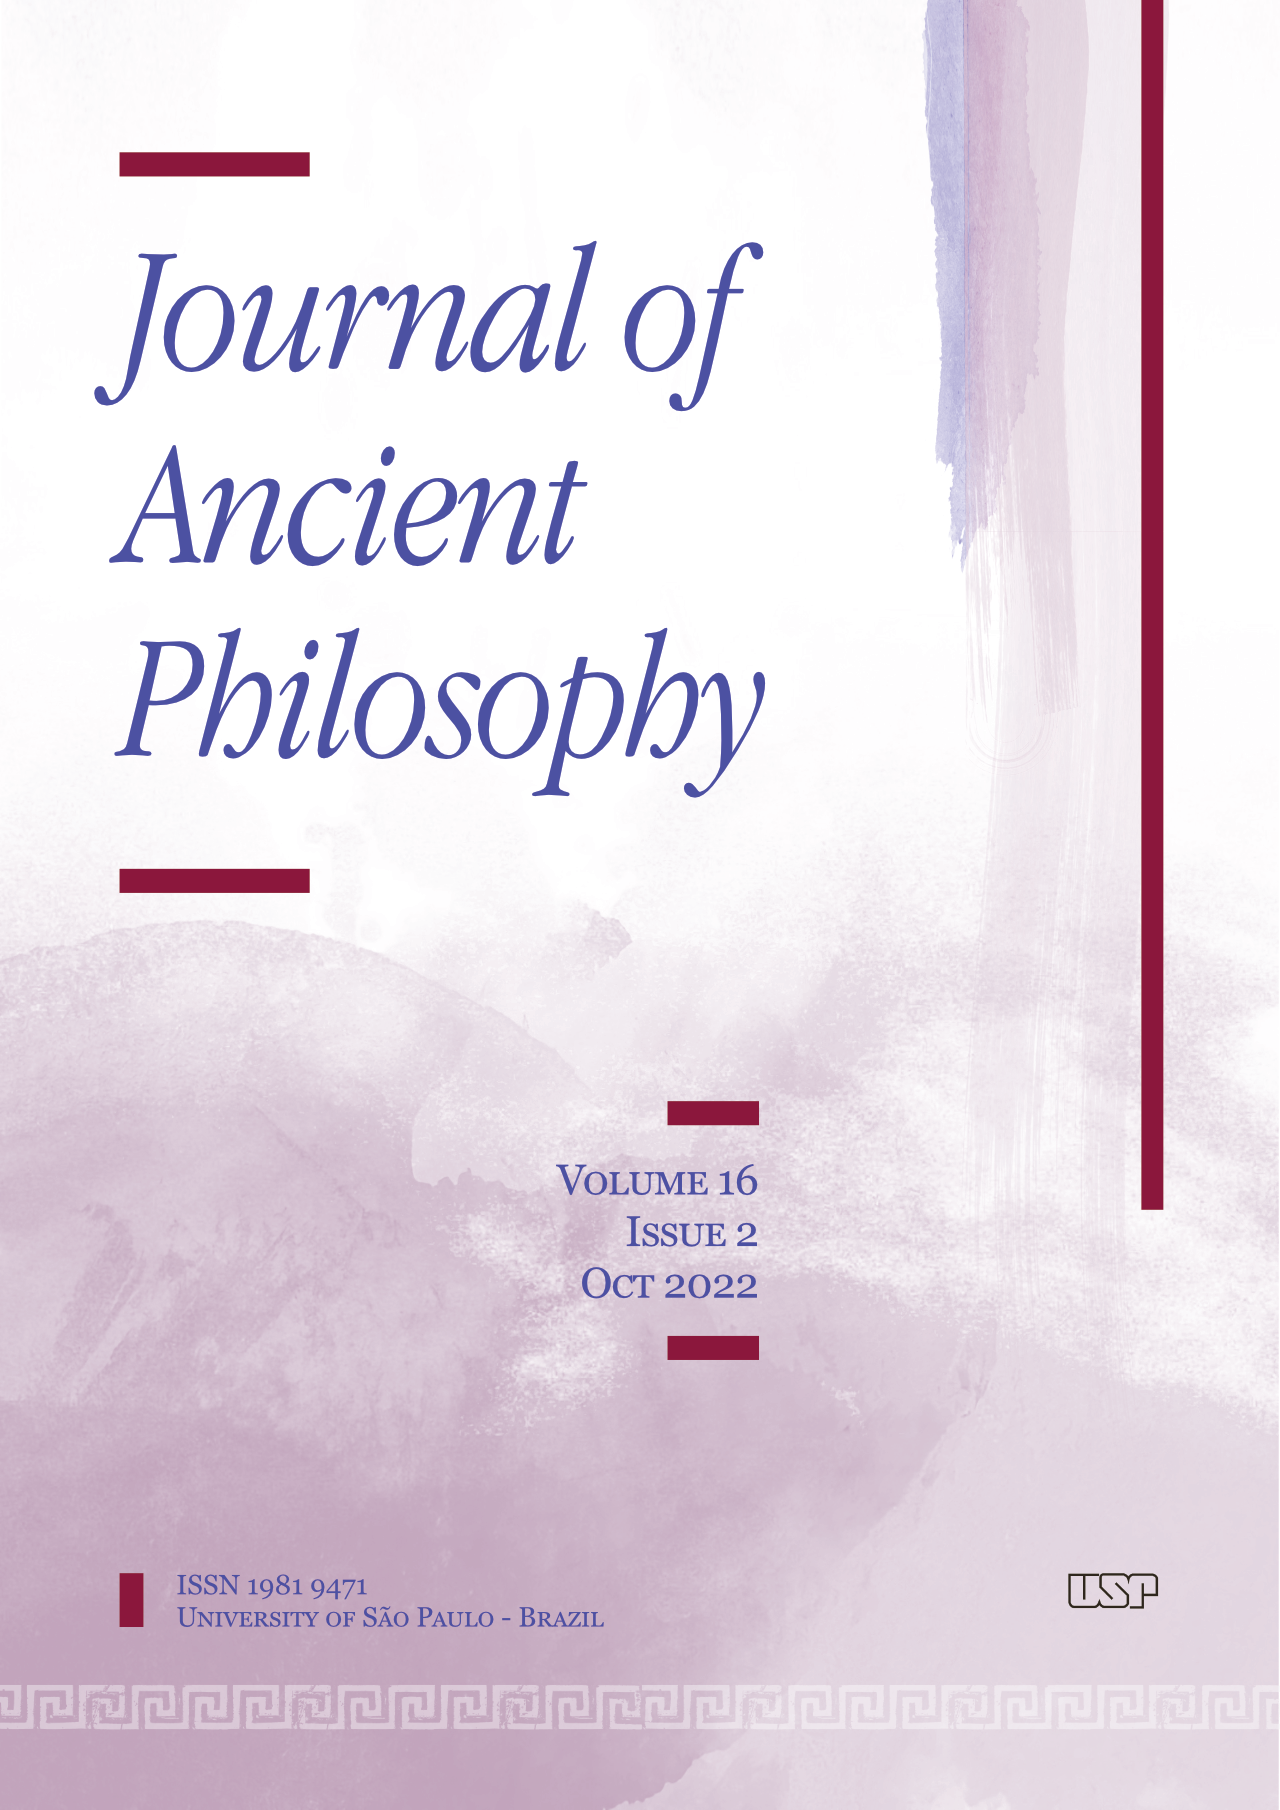 Journal of Ancient Philosophy v16i2 2022